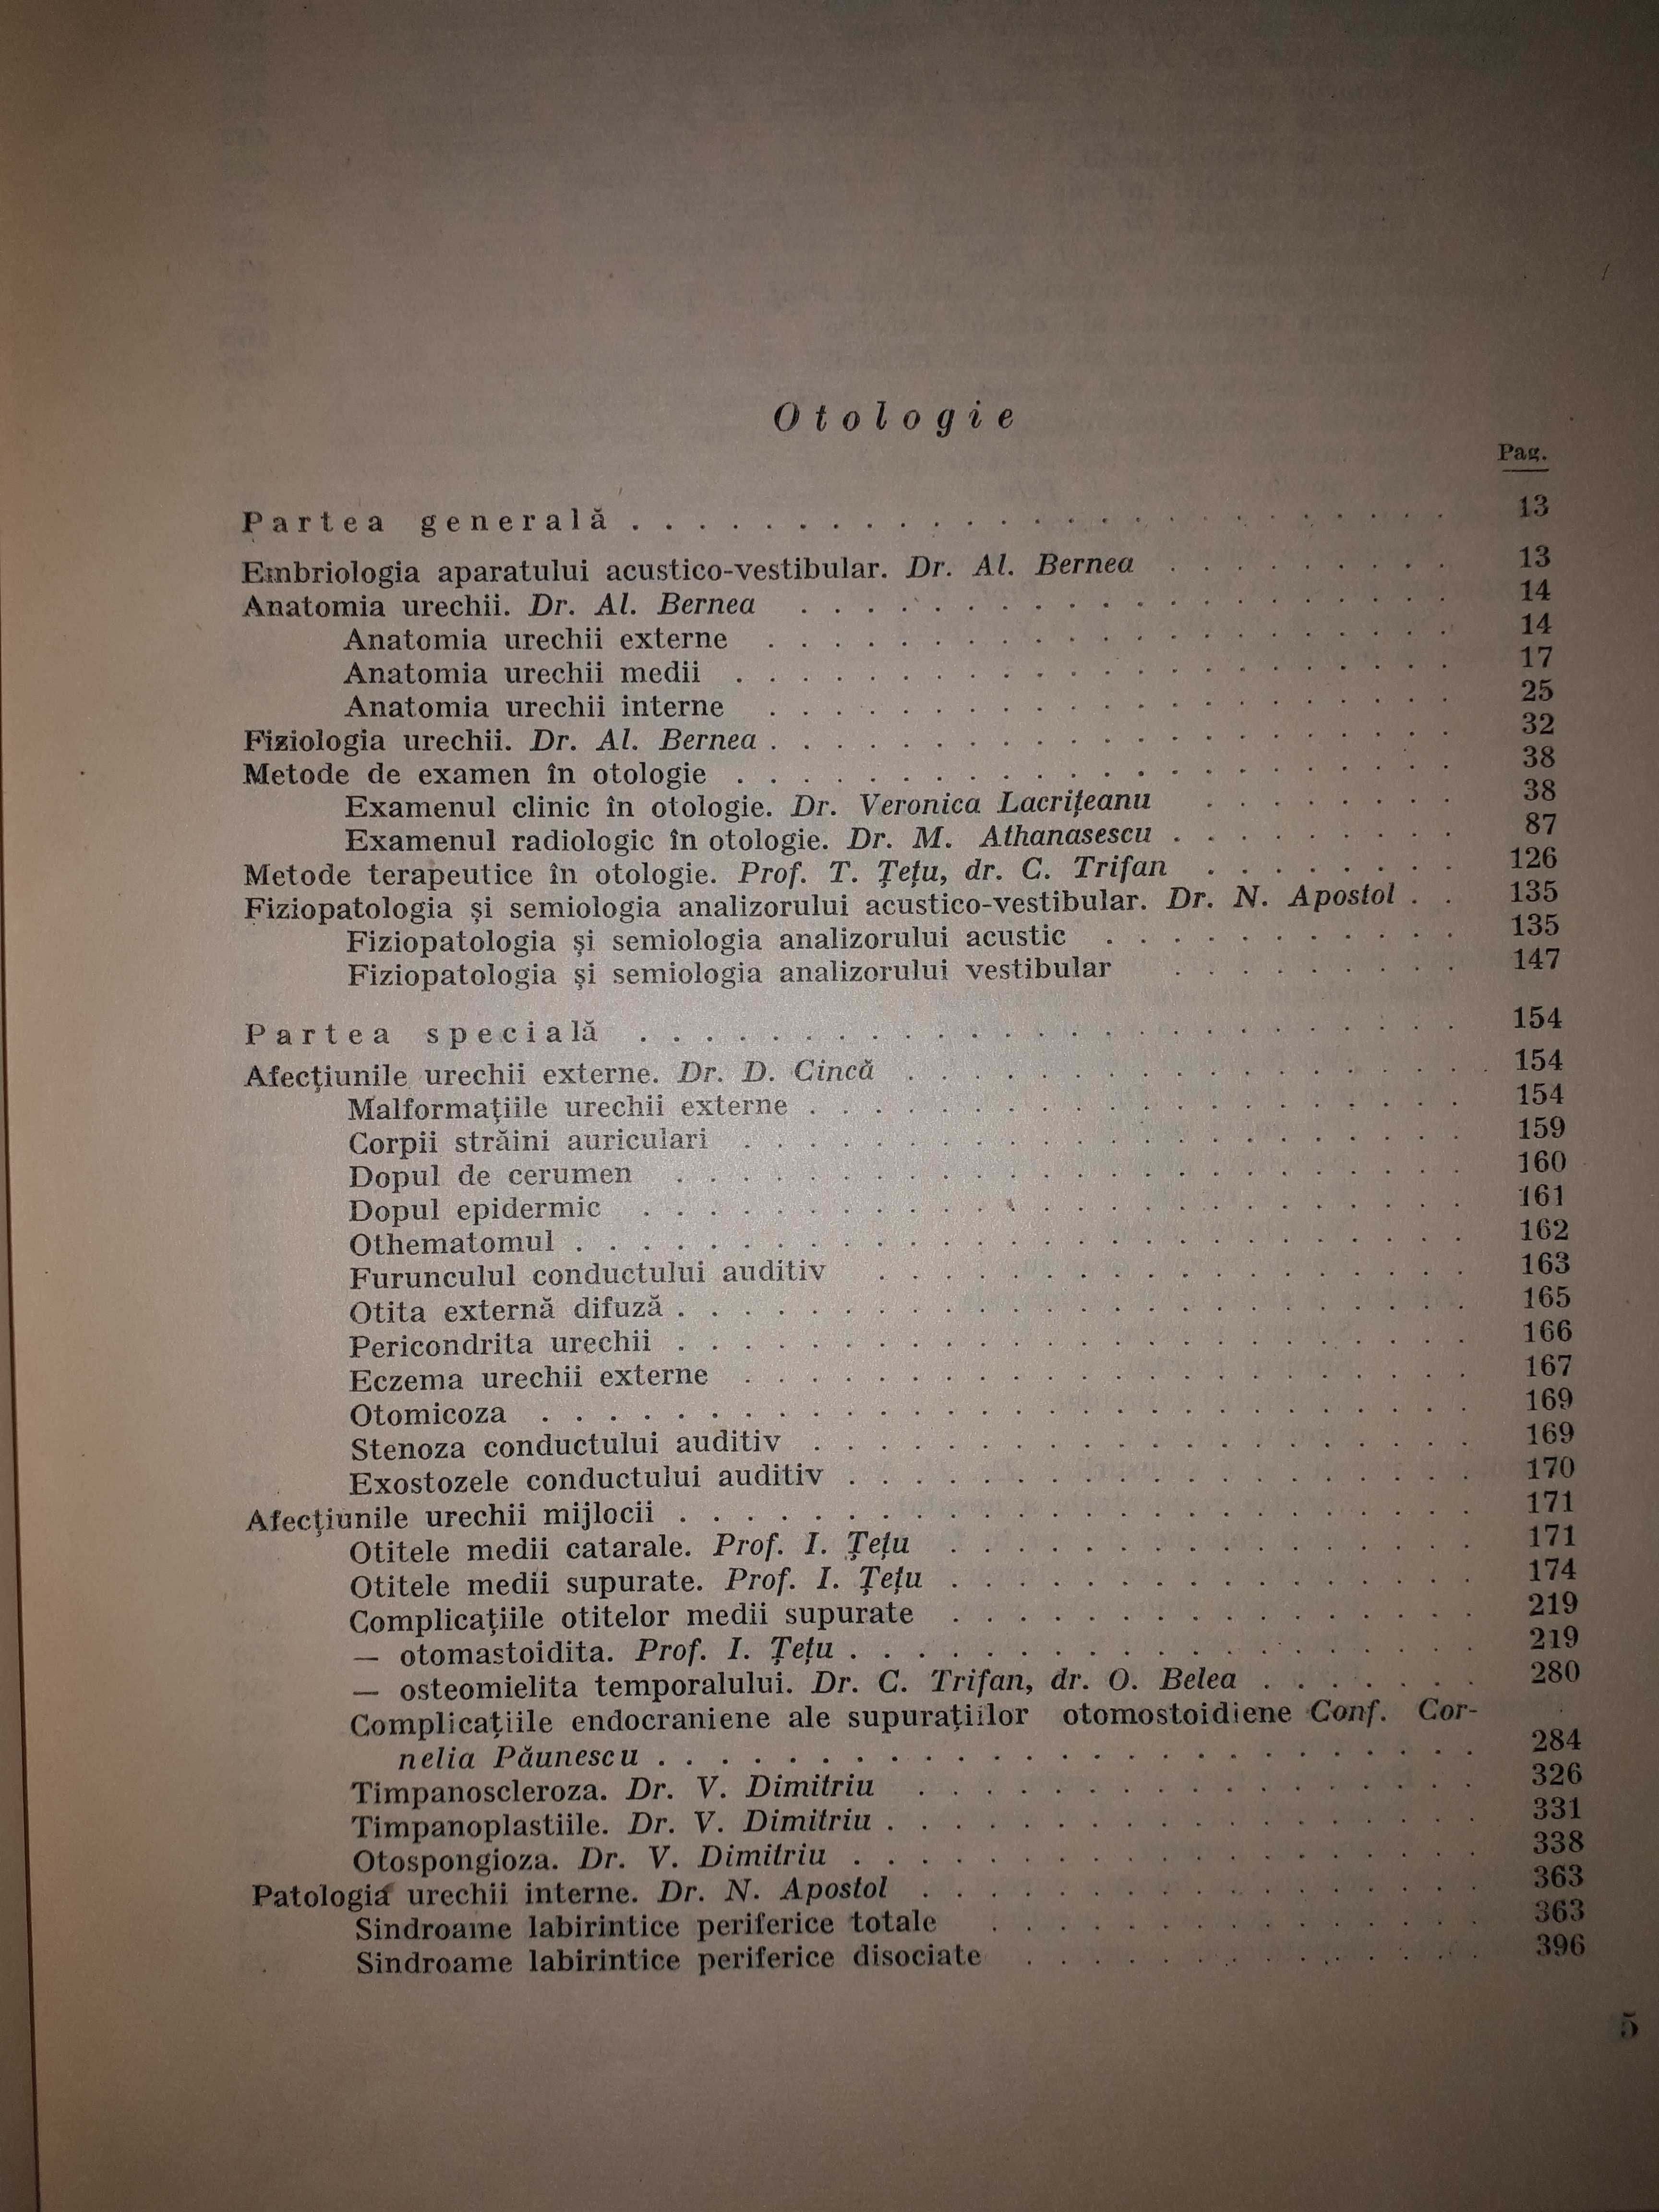 OTO-RINO-LARINGOLOGIE, vol. II, Costinescu, Girbea, Popovici...